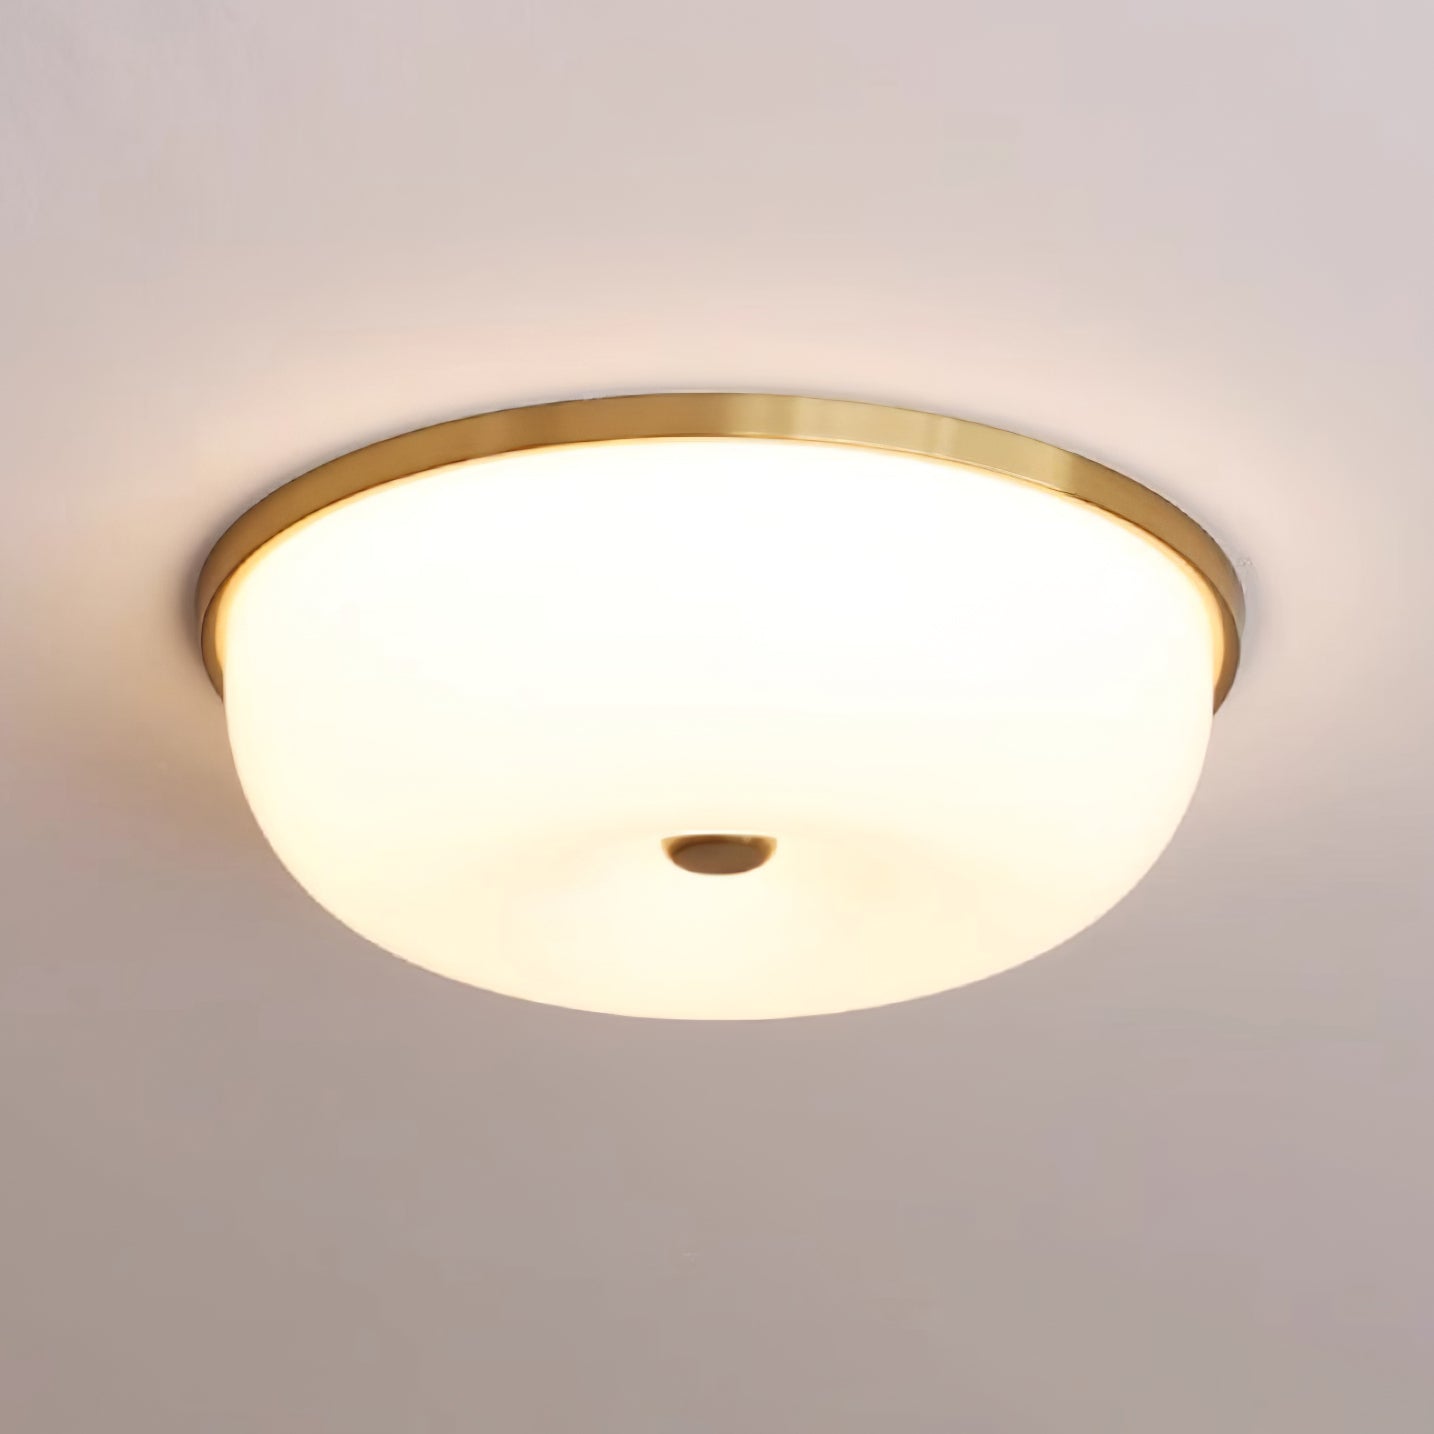 Perkins Ceiling Lamp